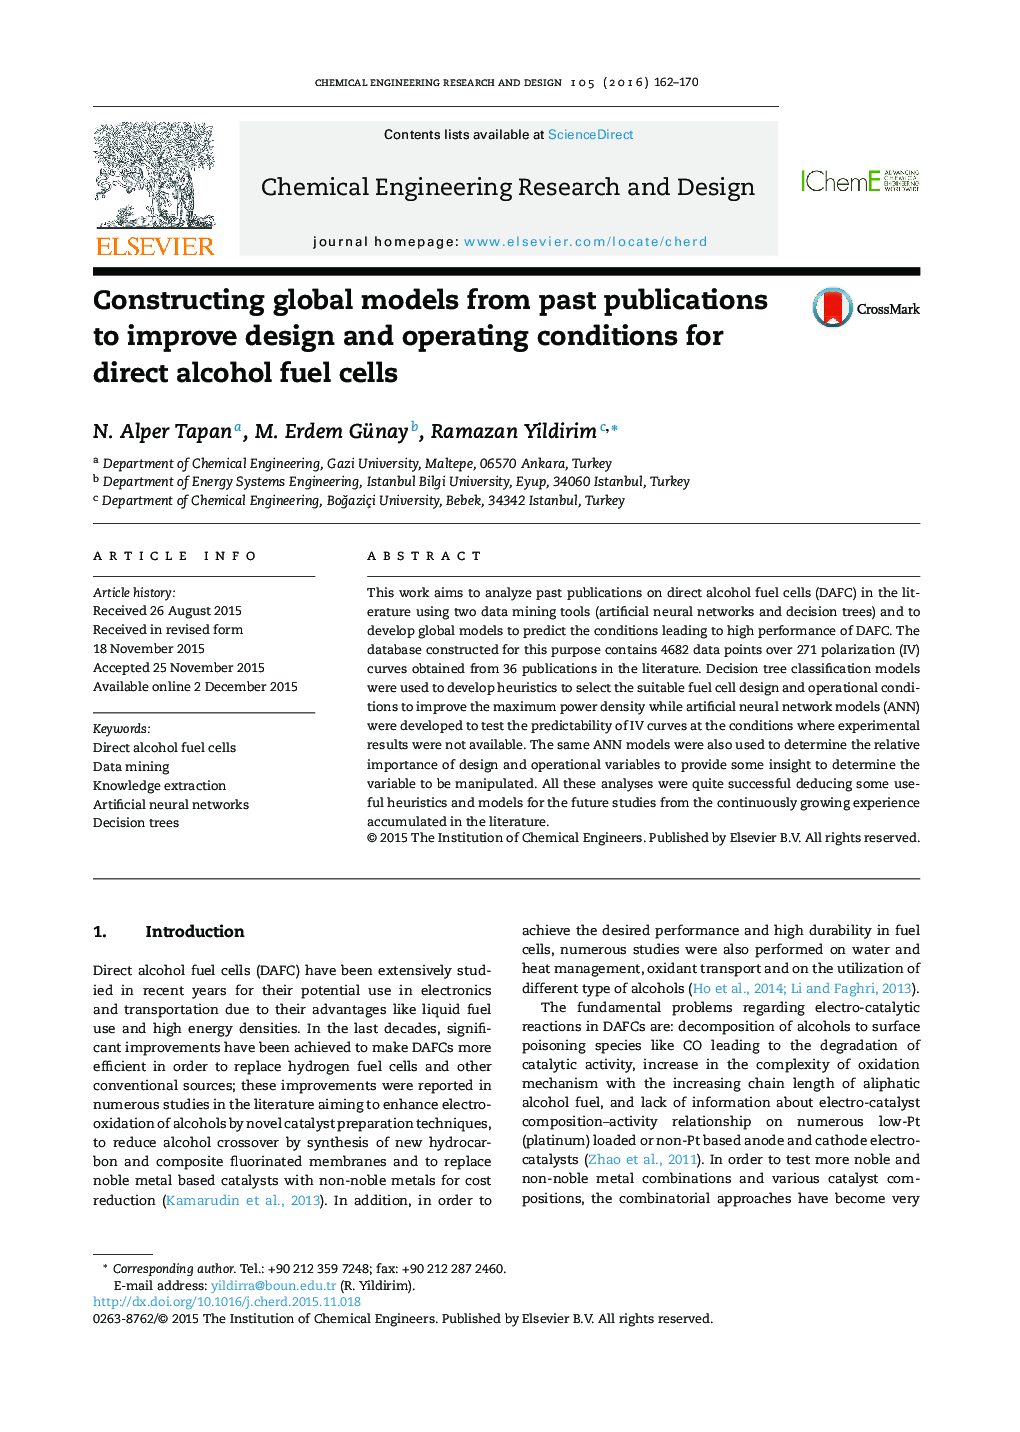 ساخت مدل های جهانی از انتشارات گذشته برای بهبود طراحی و شرایط عملیاتی برای سلول های مستقیم سوخت الکل 